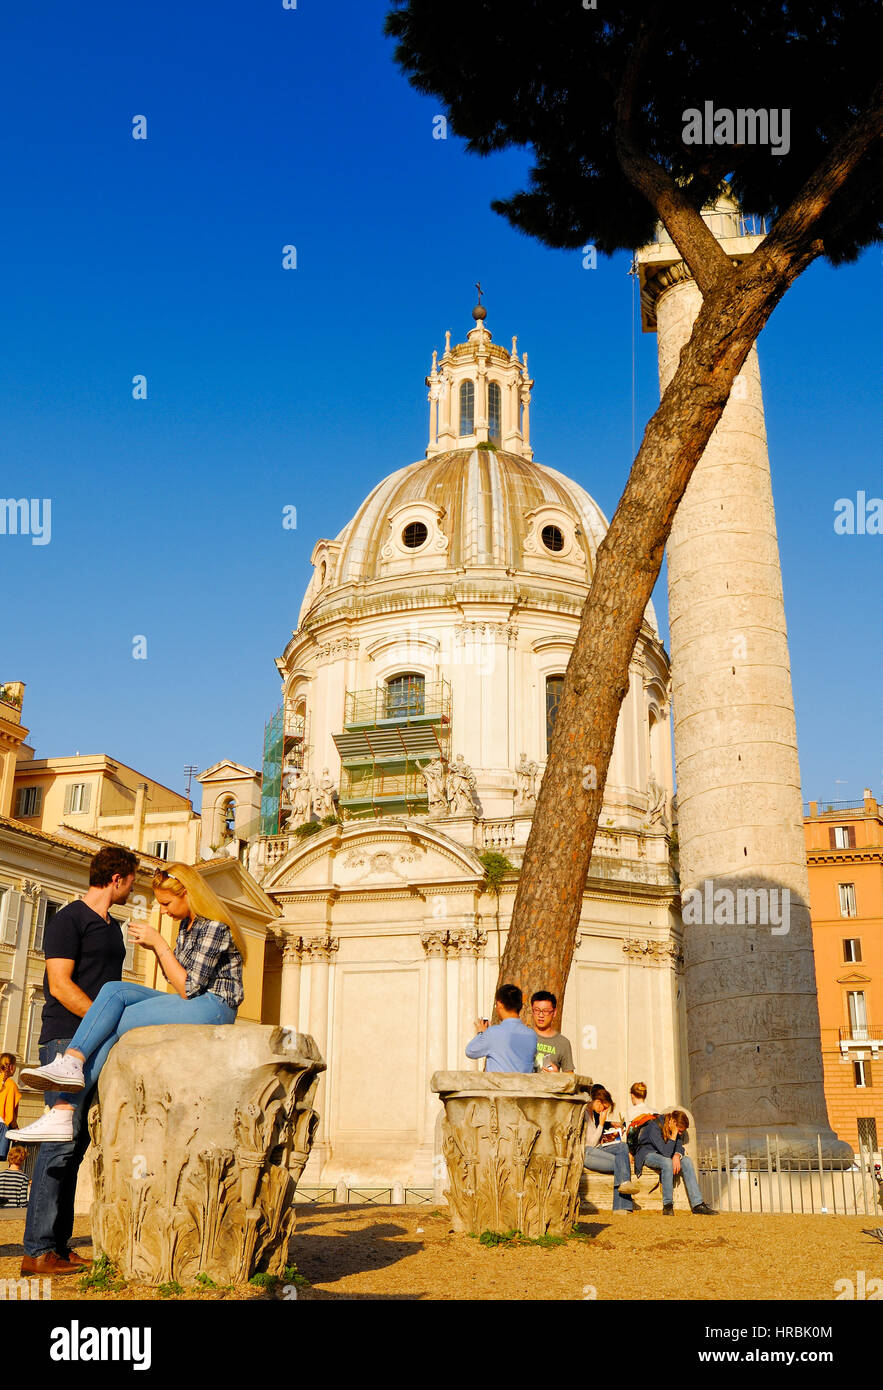 SANTA MARIA DI LORETO CHURCH AND TRAJAN'S COLUMN, ROMAN FORUM, ROME'S HISTORIC CENTER, ITALY. Stock Photo